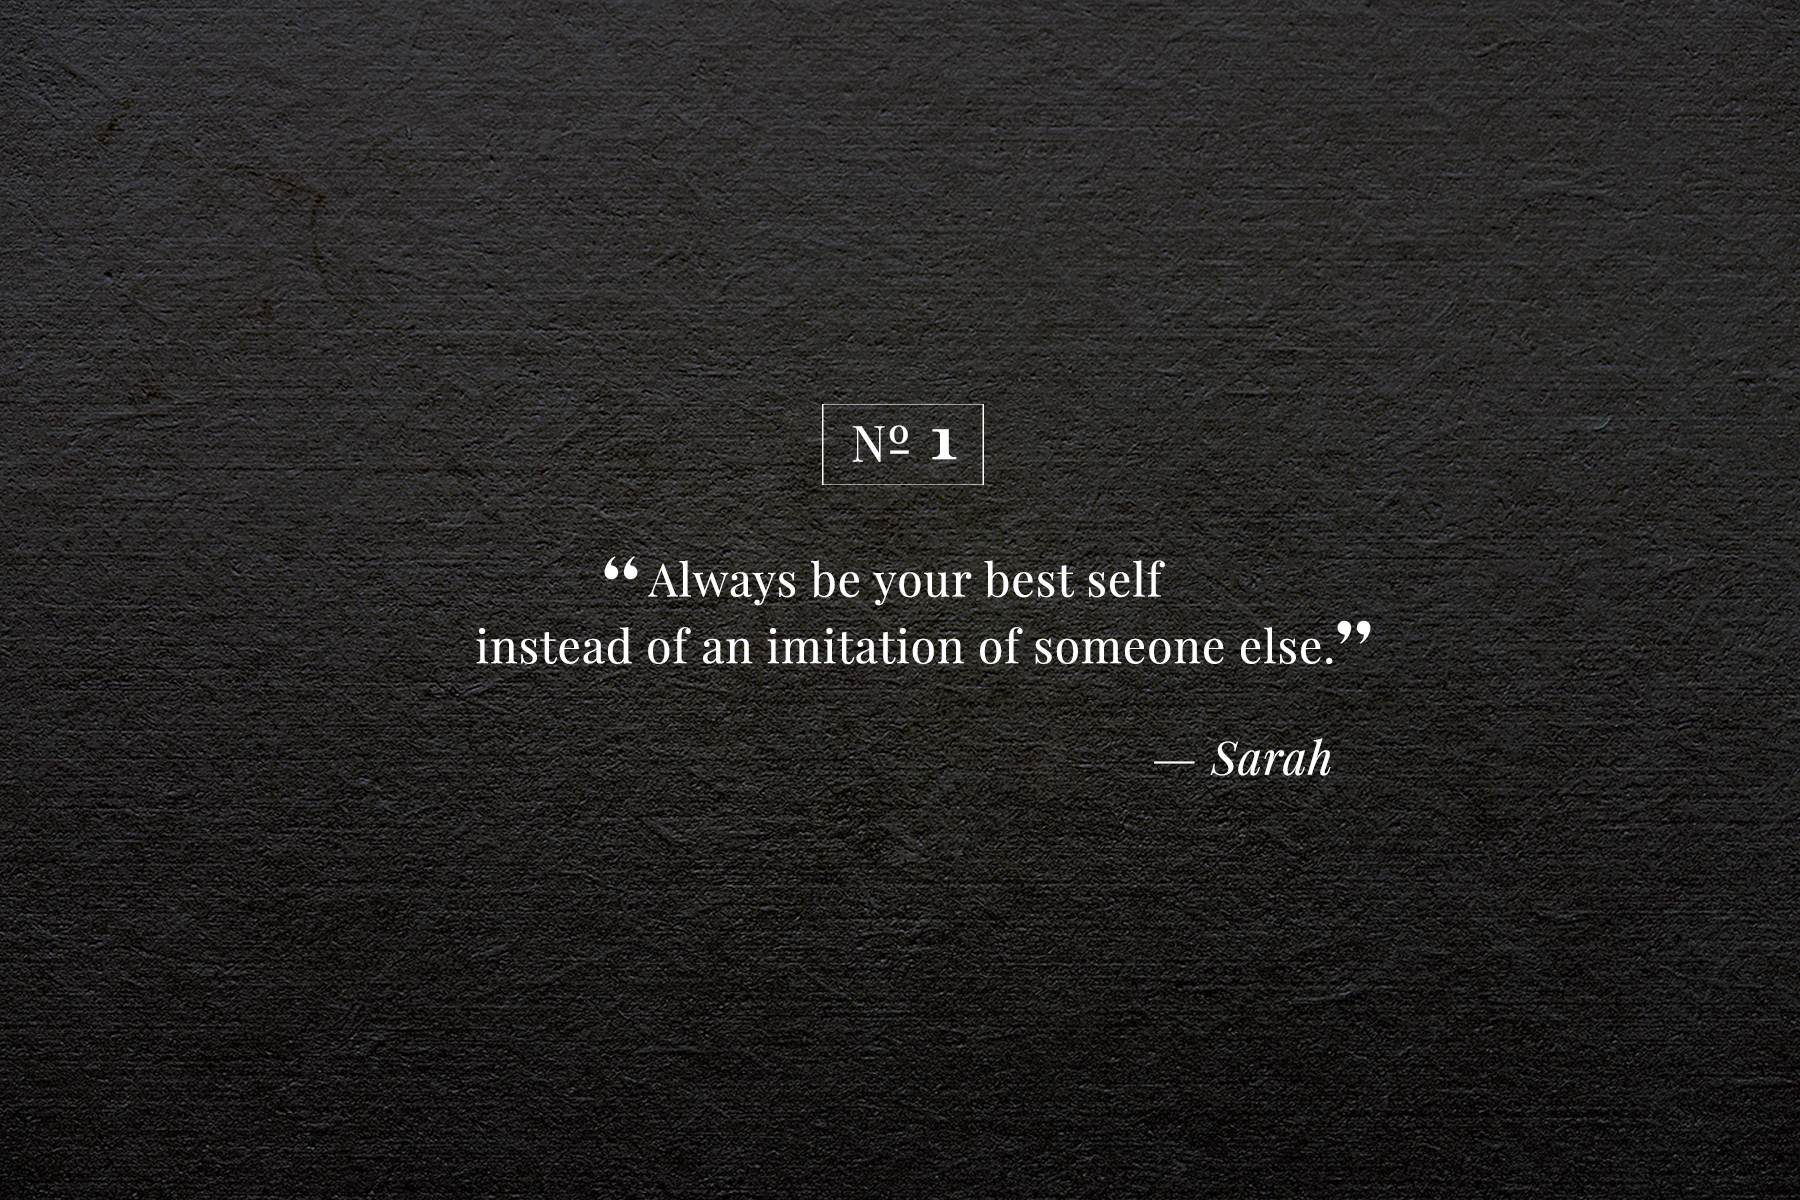 Sarah #1.jpg